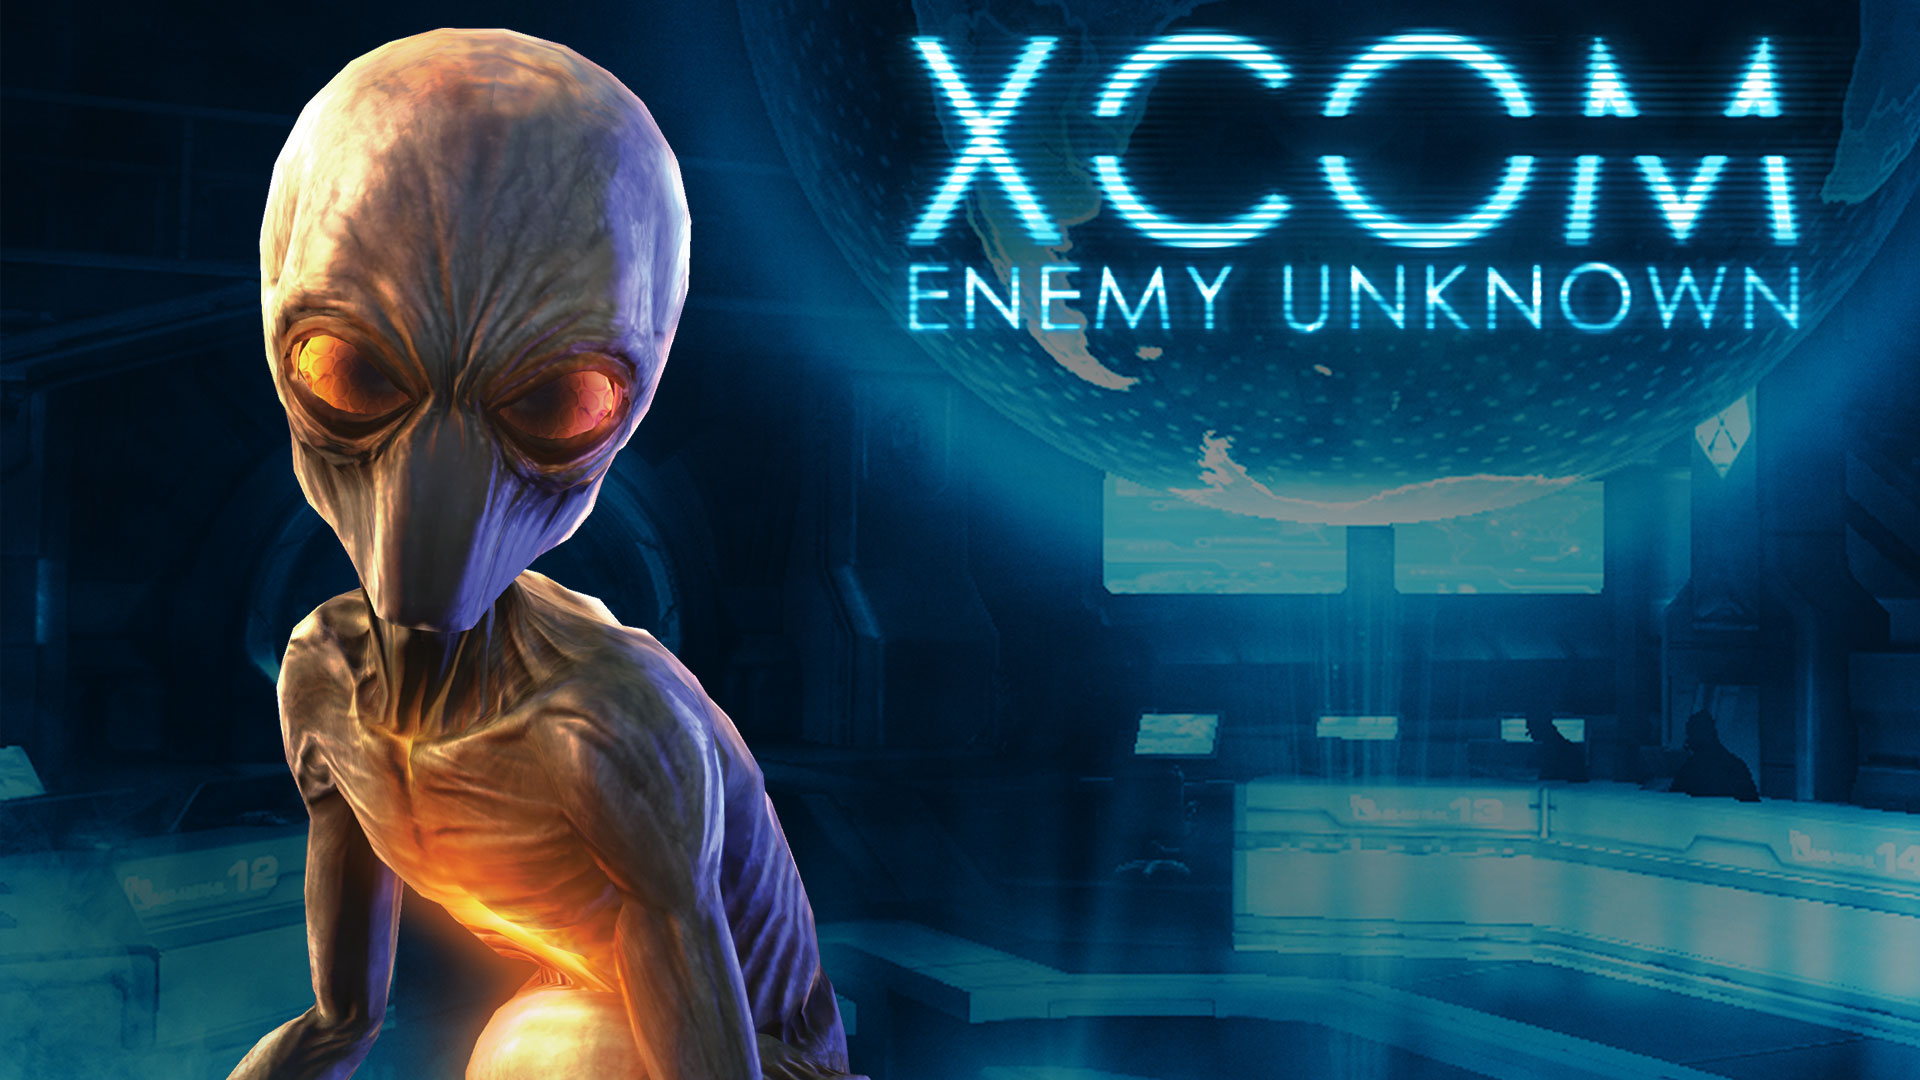 xcom, Enemy, Unknown, Sci fi, Alien Wallpaper